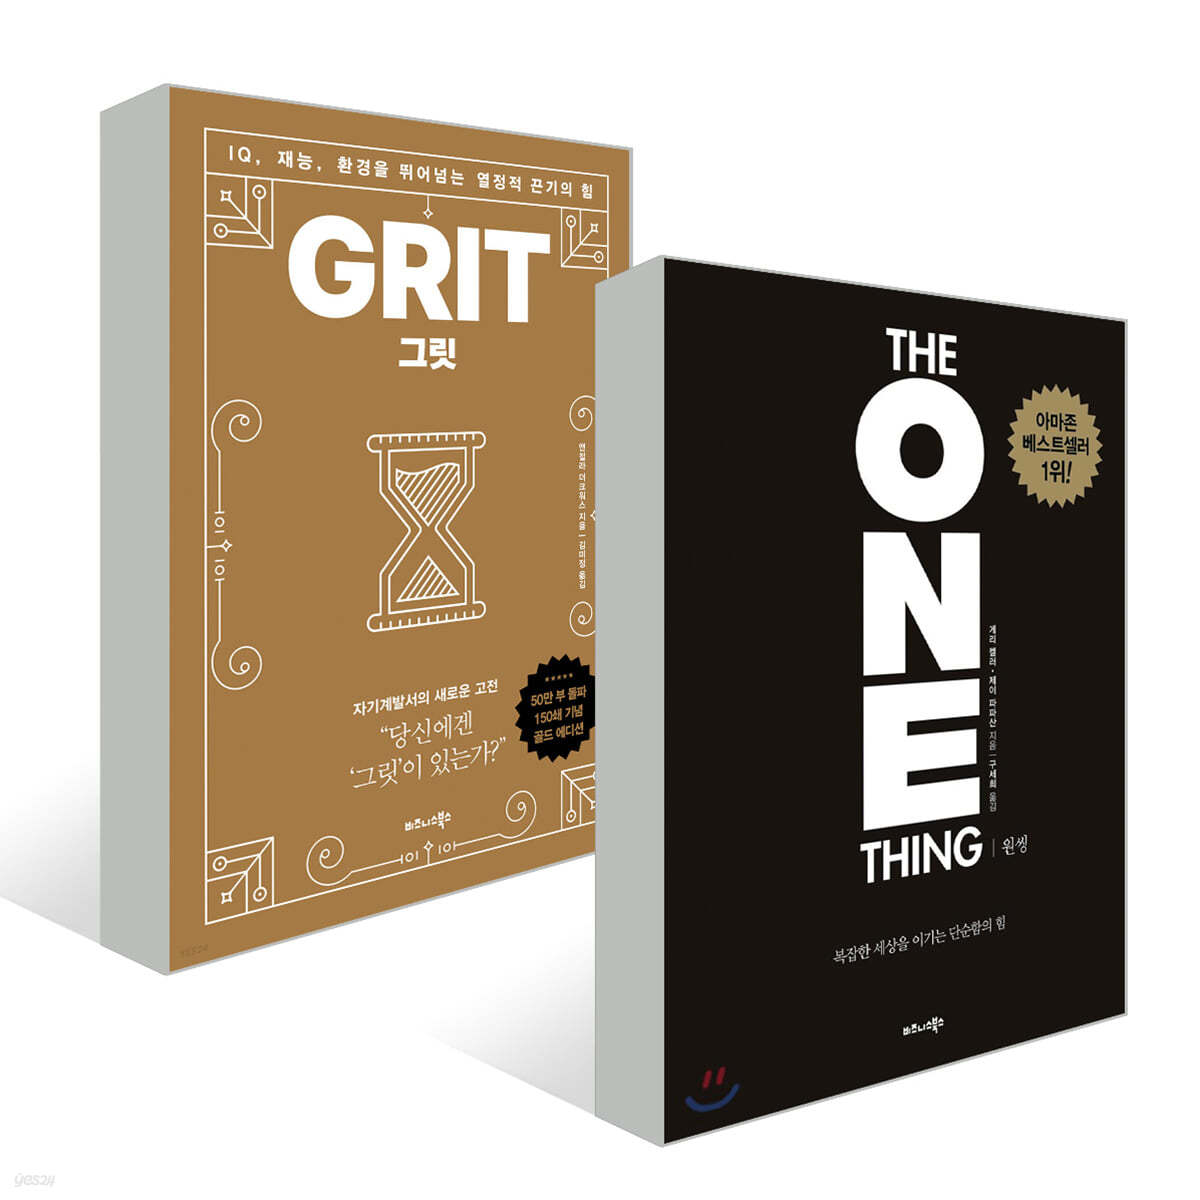 그릿 Grit (50만 부 판매 기념 리커버 골드에디션) + 원씽 THE ONE THING